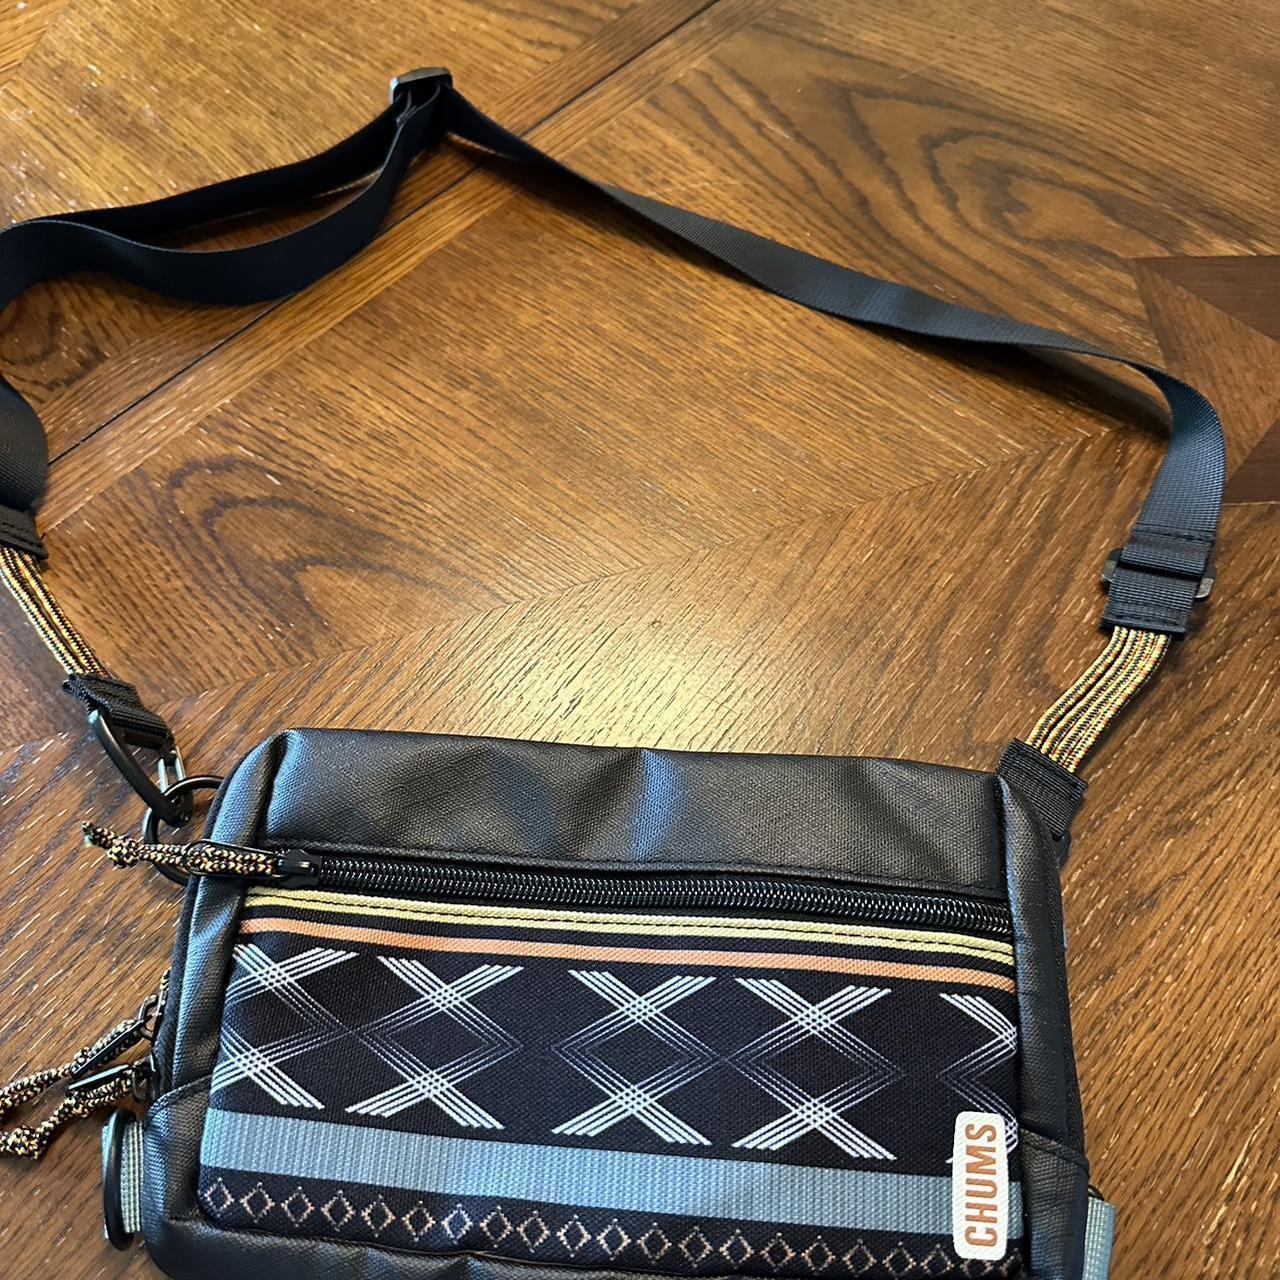 Calvin Klein side purse, worn 3 times. Lots of - Depop